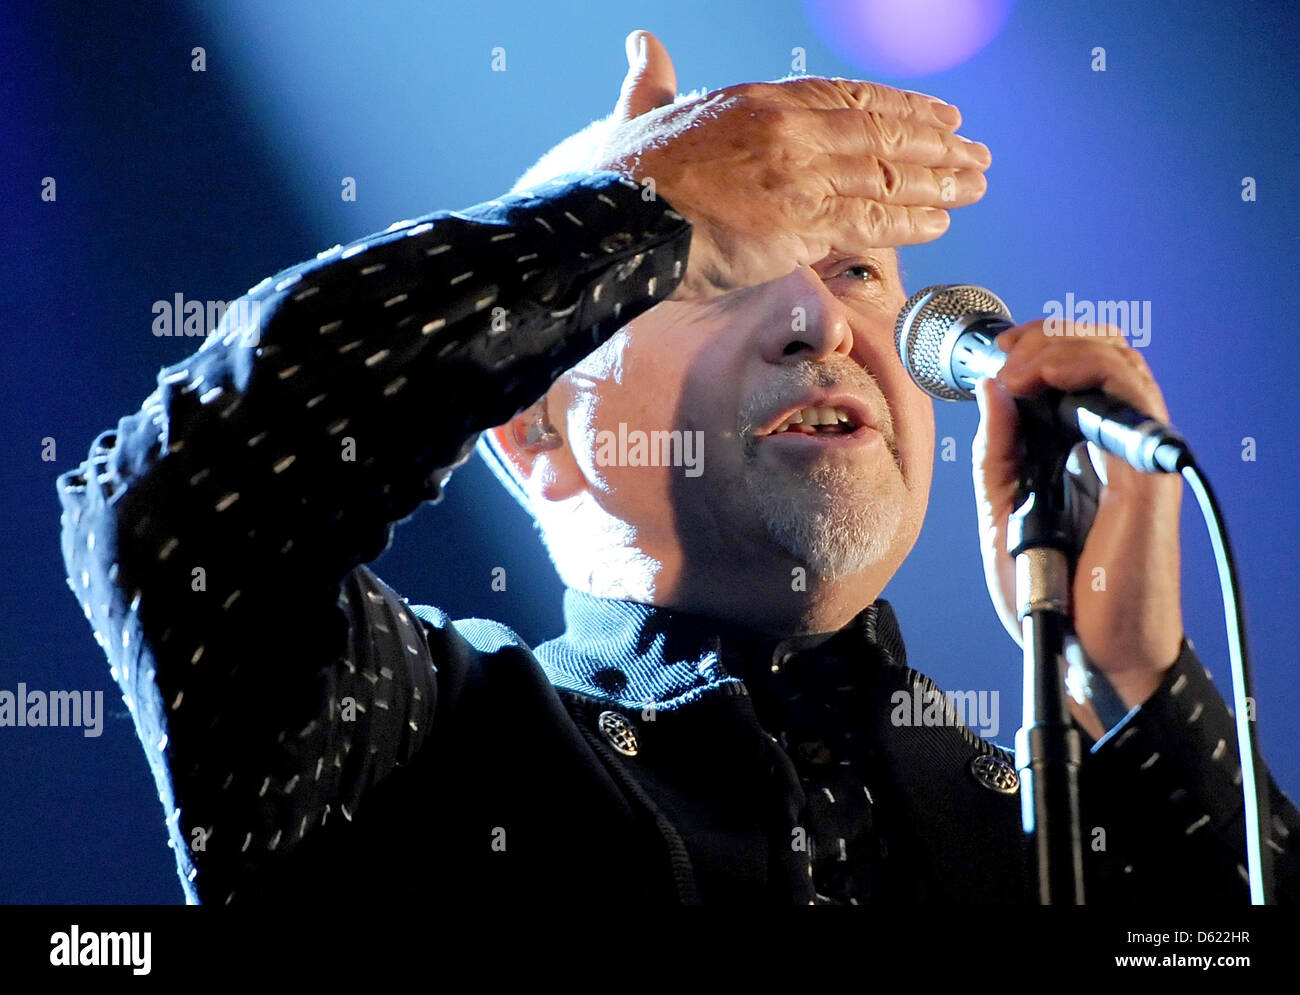 Cantante britannico Peter Gabriel si esibisce dal vivo sul palco con la " nuova Orchestra di sangue' alla O2 World di Berlino, Germania, 09 maggio 2012. Foto: Britta Pedersen Foto Stock